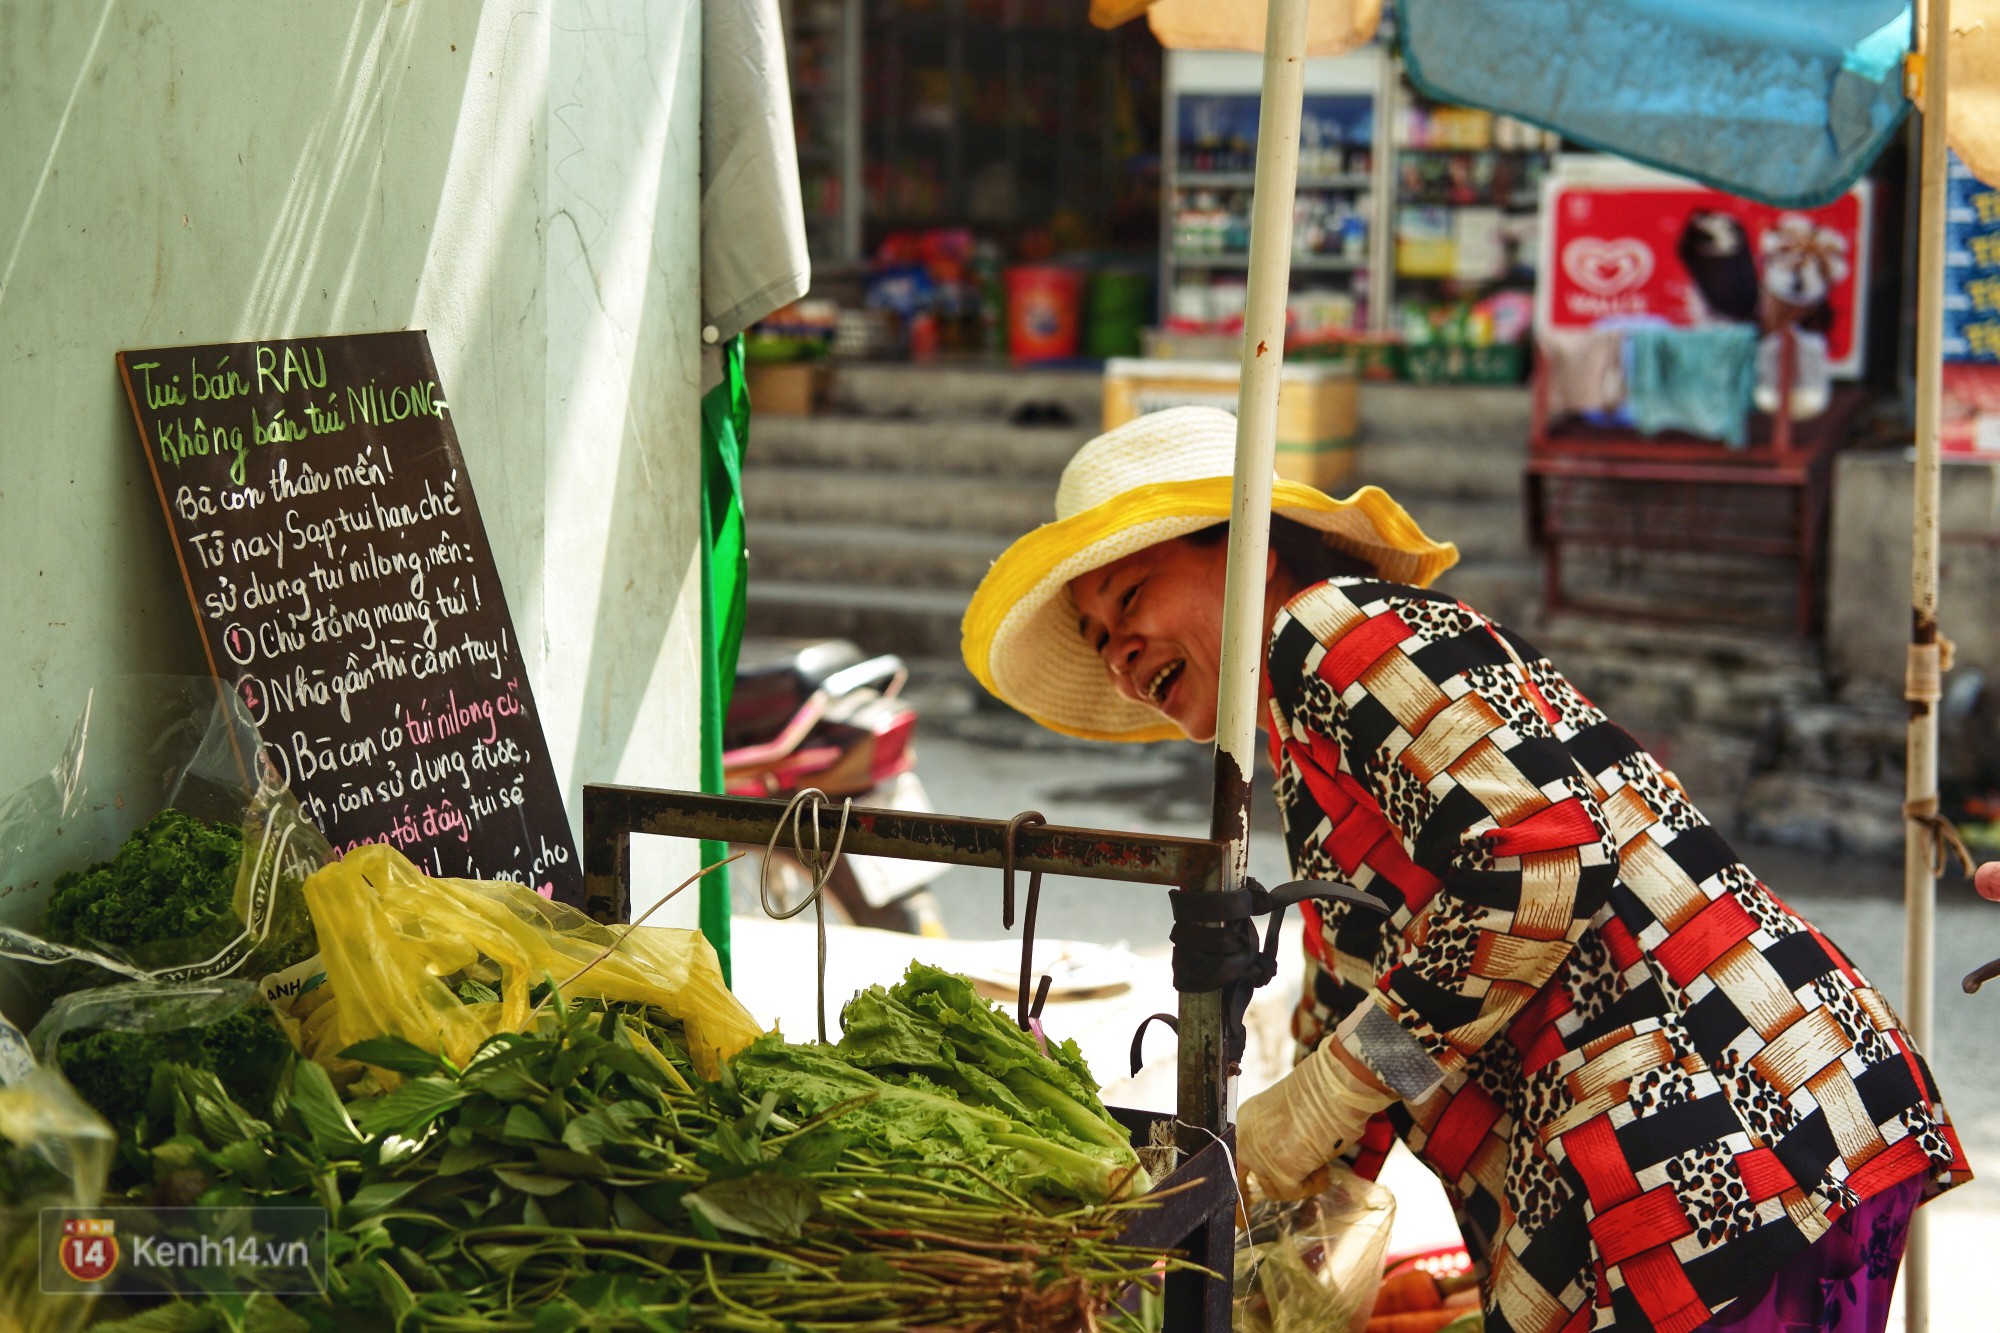 Gặp cô bán rau vui tính ở Sài Gòn với tấm bảng không bán túi nilon: Nhiều khách bảo cô làm trò xàm xí! - Ảnh 3.